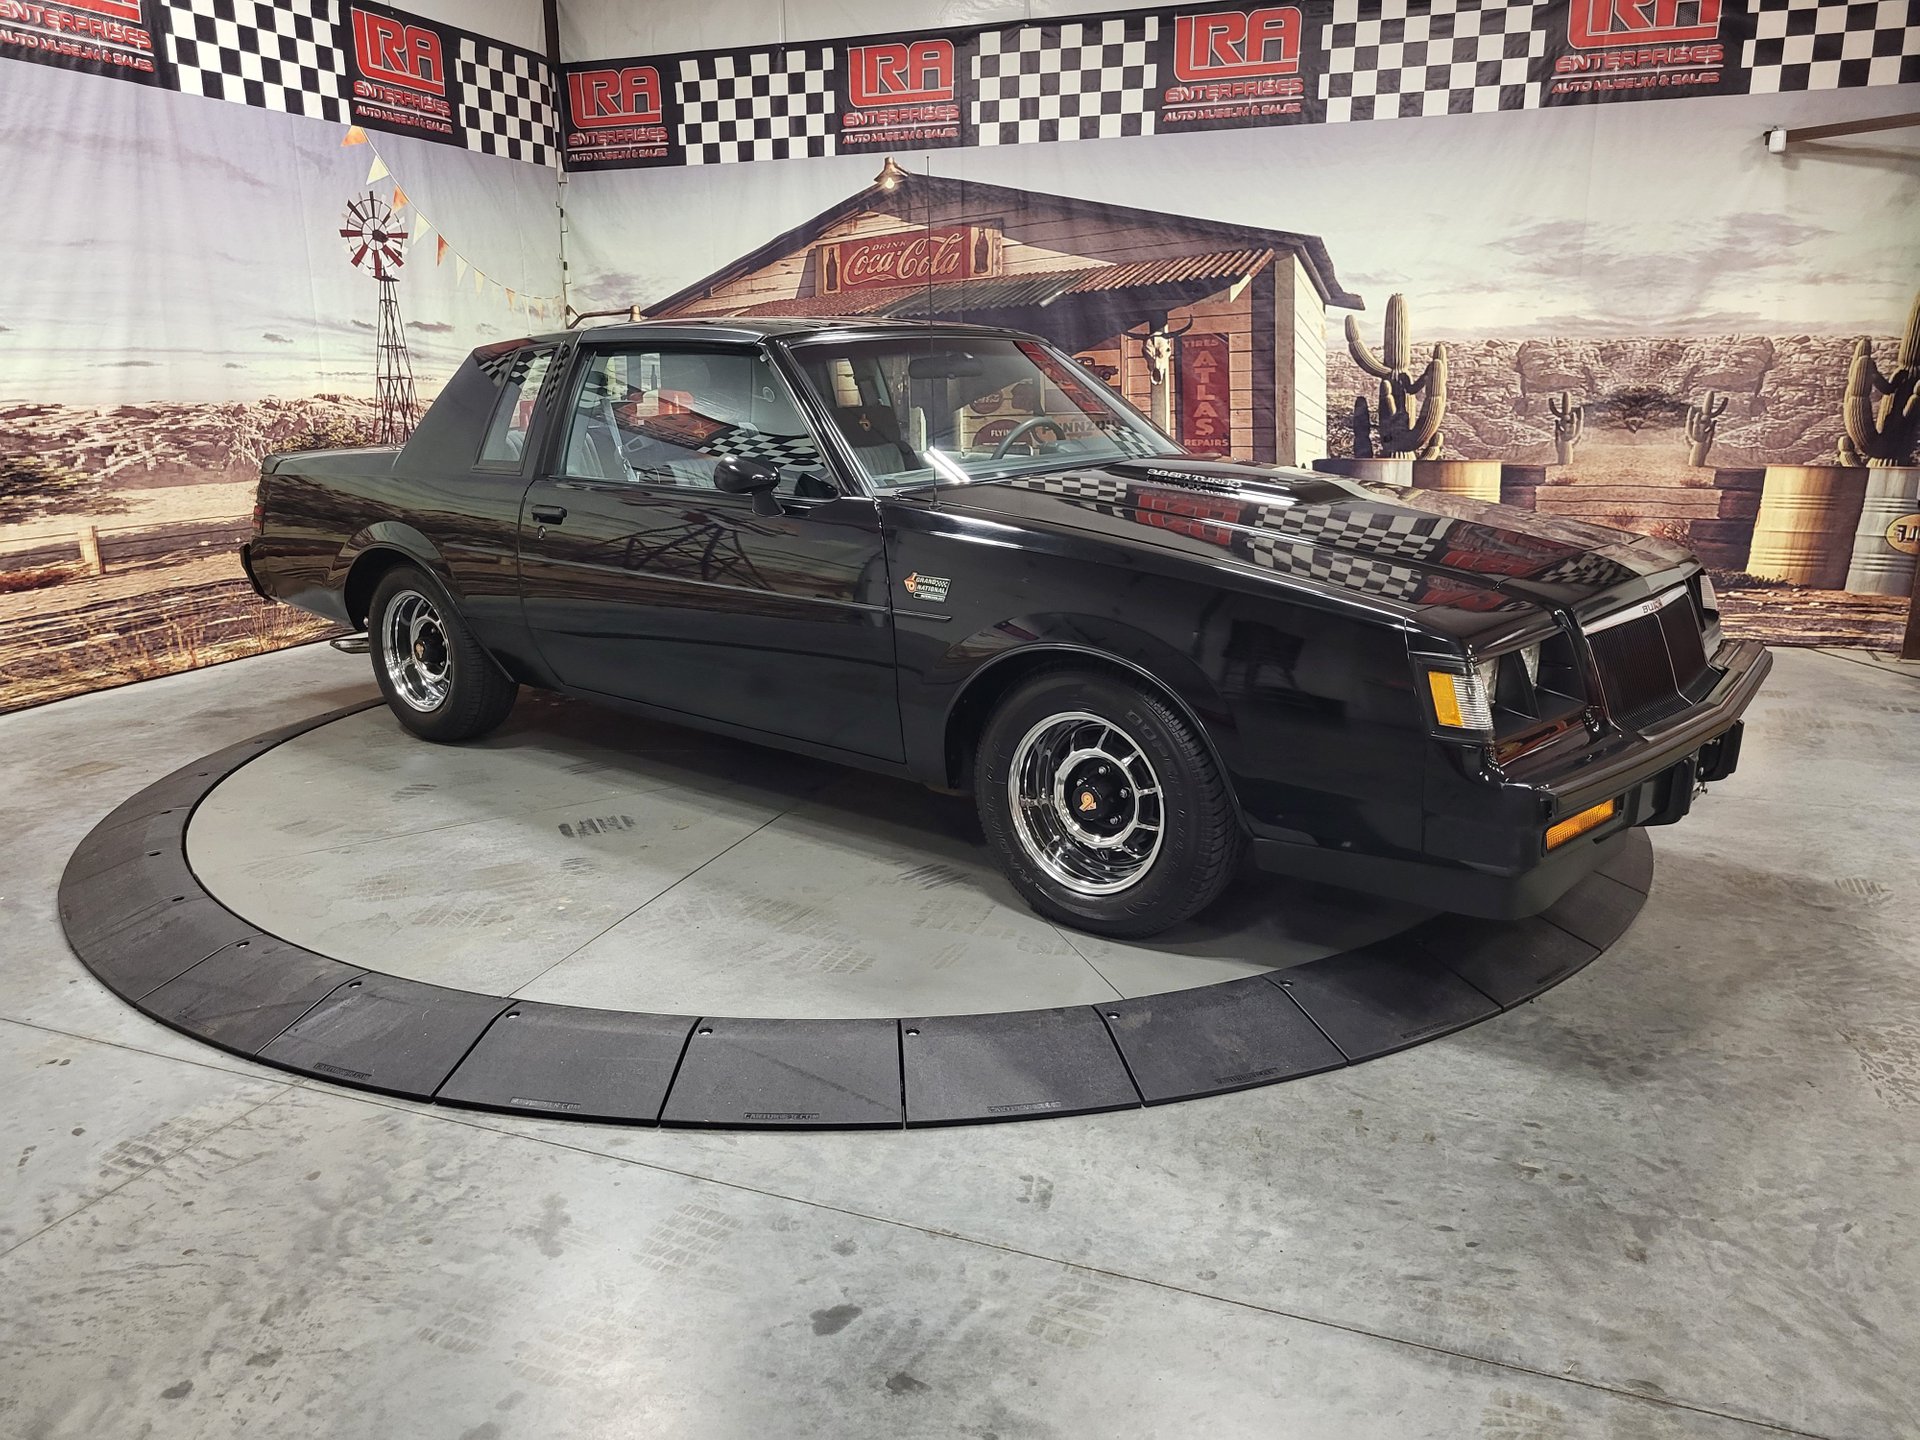 1986 Buick Regal | LRA Auto Sales